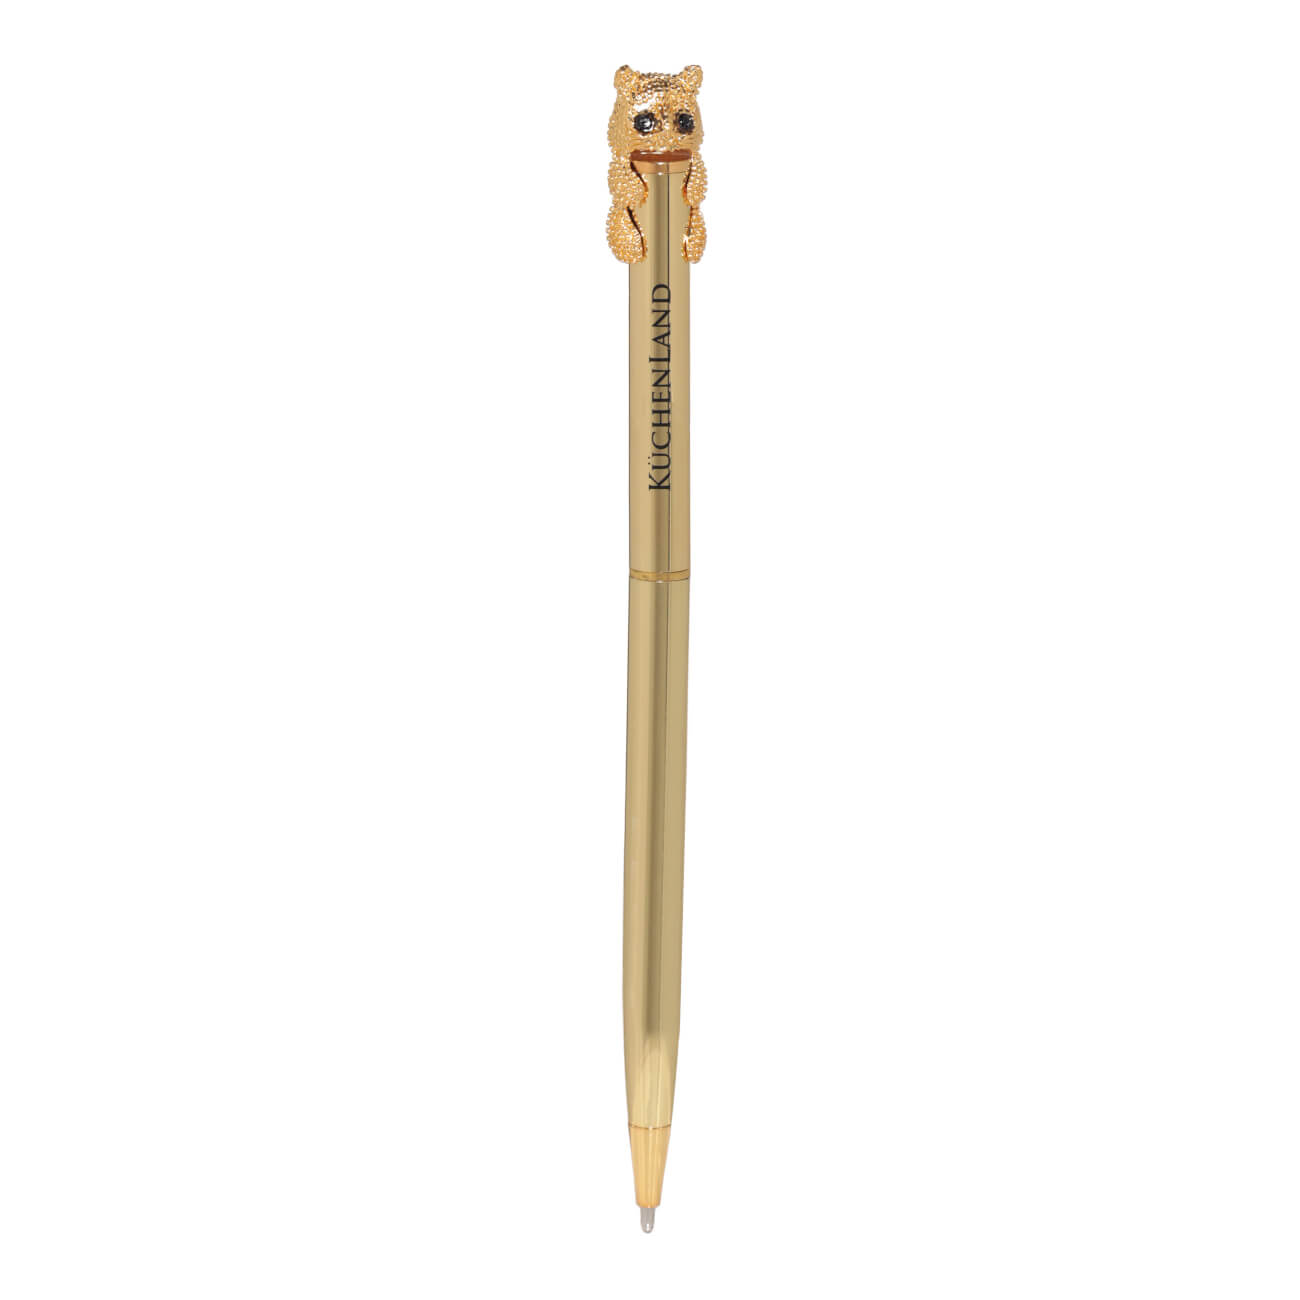 Ручка шариковая, 14 см, с фигуркой, золотистая, Кот, Draw figure ручка подарочная шариковая автоматическая